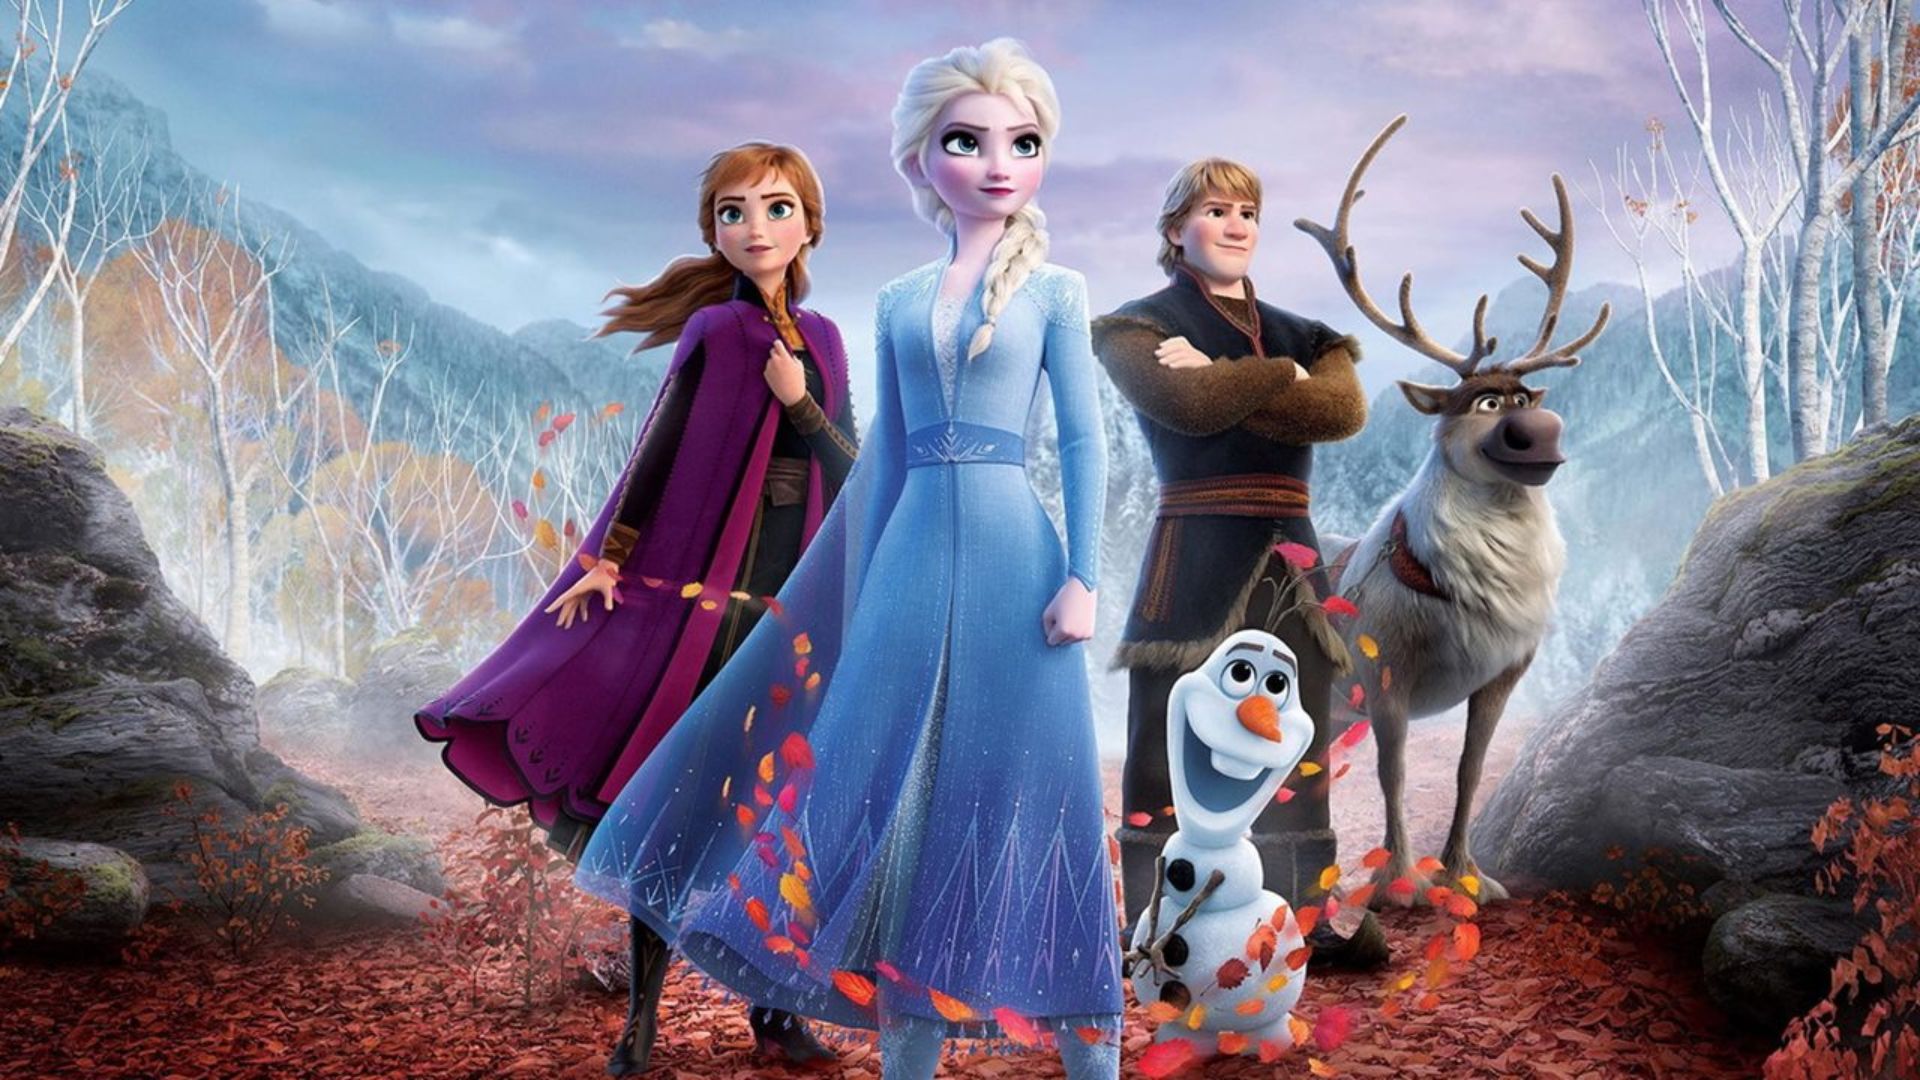 Frozen 3 vai acontecer? Veja o que esperar - Observatório do Cinema